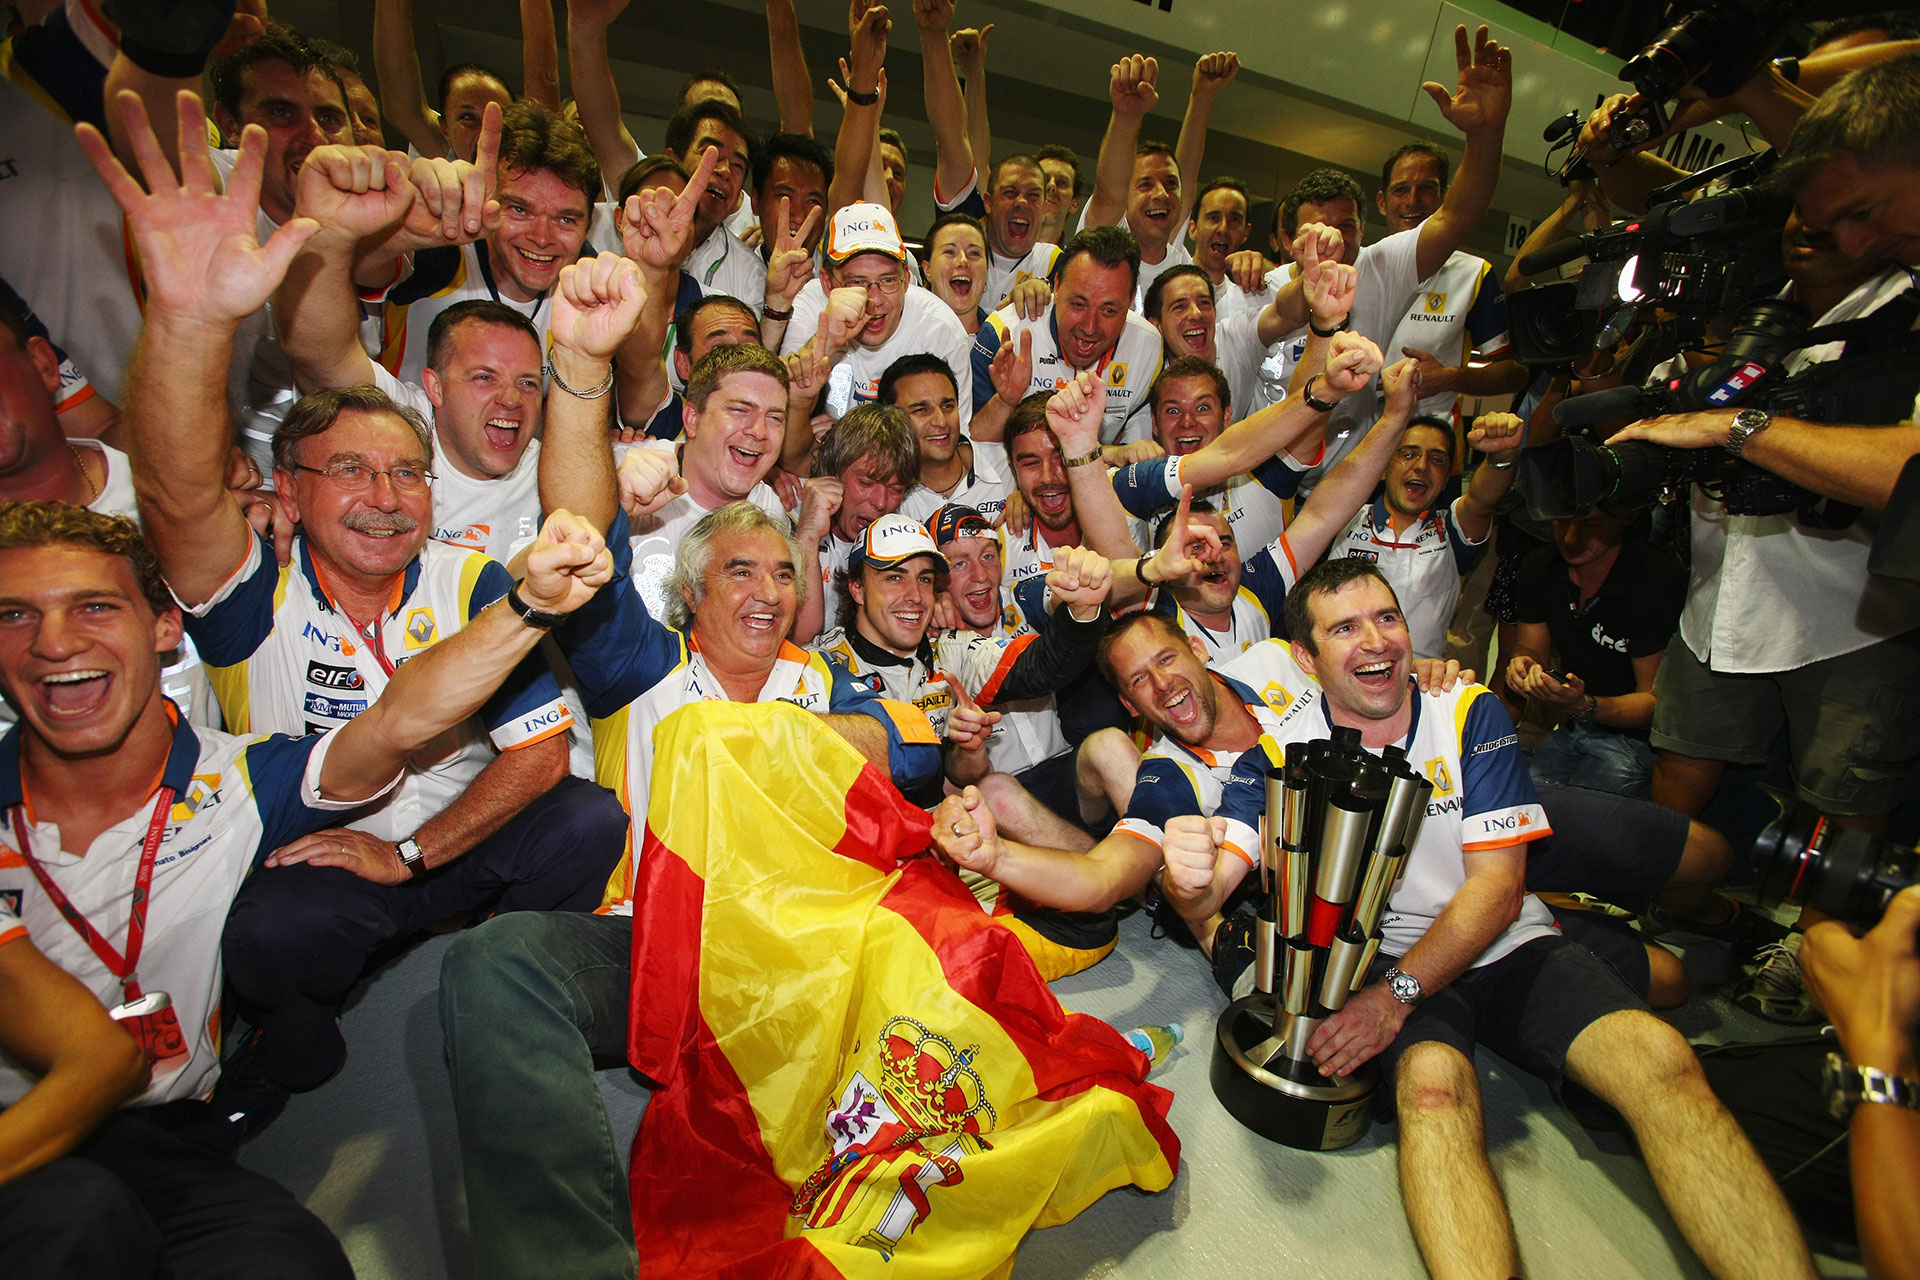 El festejo de Renault tras el triunfo de Alonso. Detrás suyo, a su izquierda, sonríe Nelsinho Piquet (Getty)